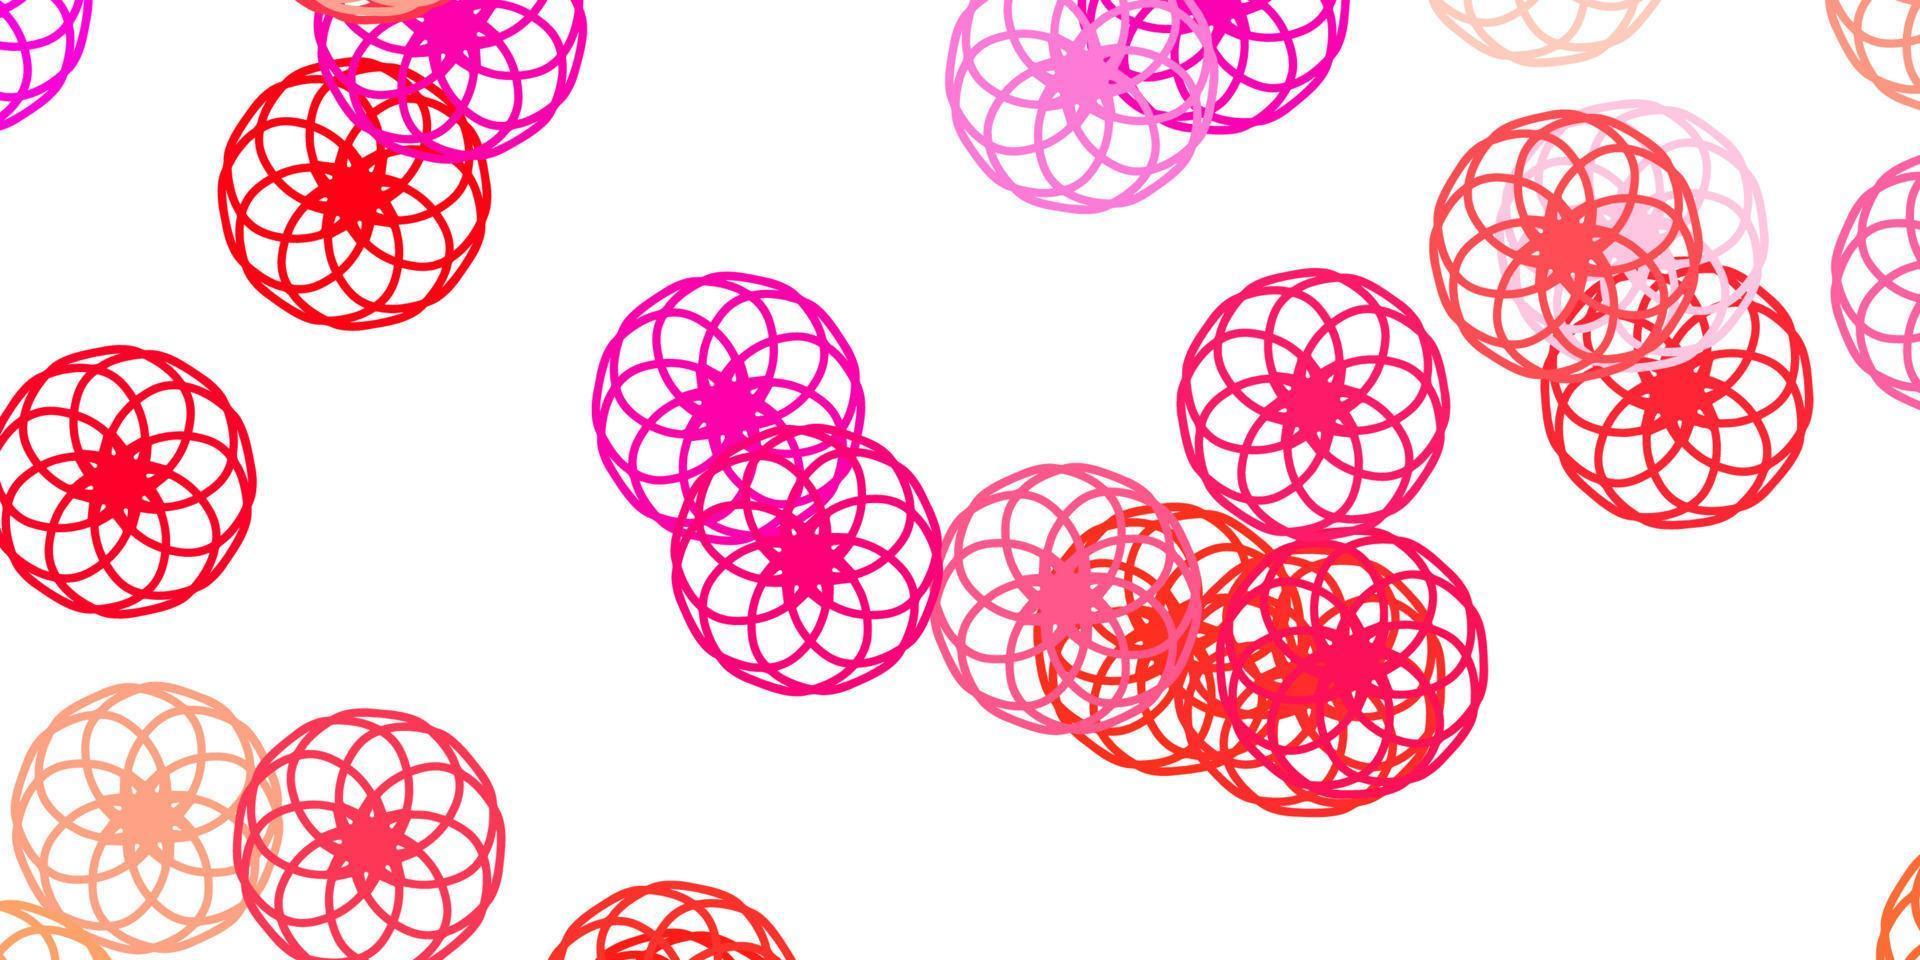 layout de vetor rosa claro com formas de círculo.